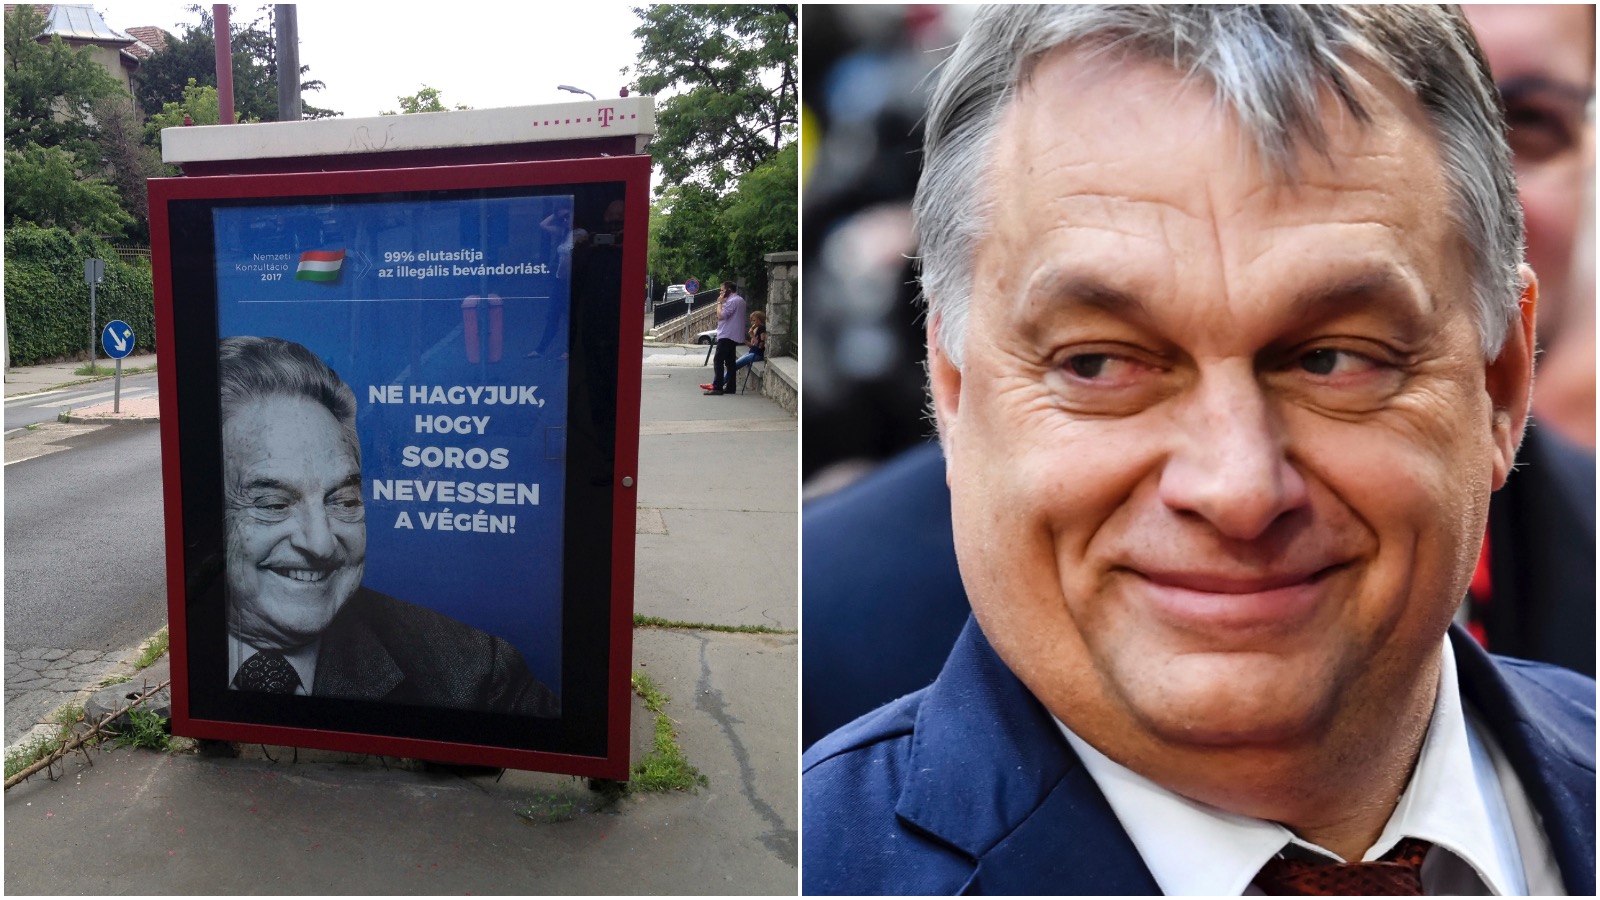 Viktor Orbáns forhold til antisemitismeAf Frederik Ørskov